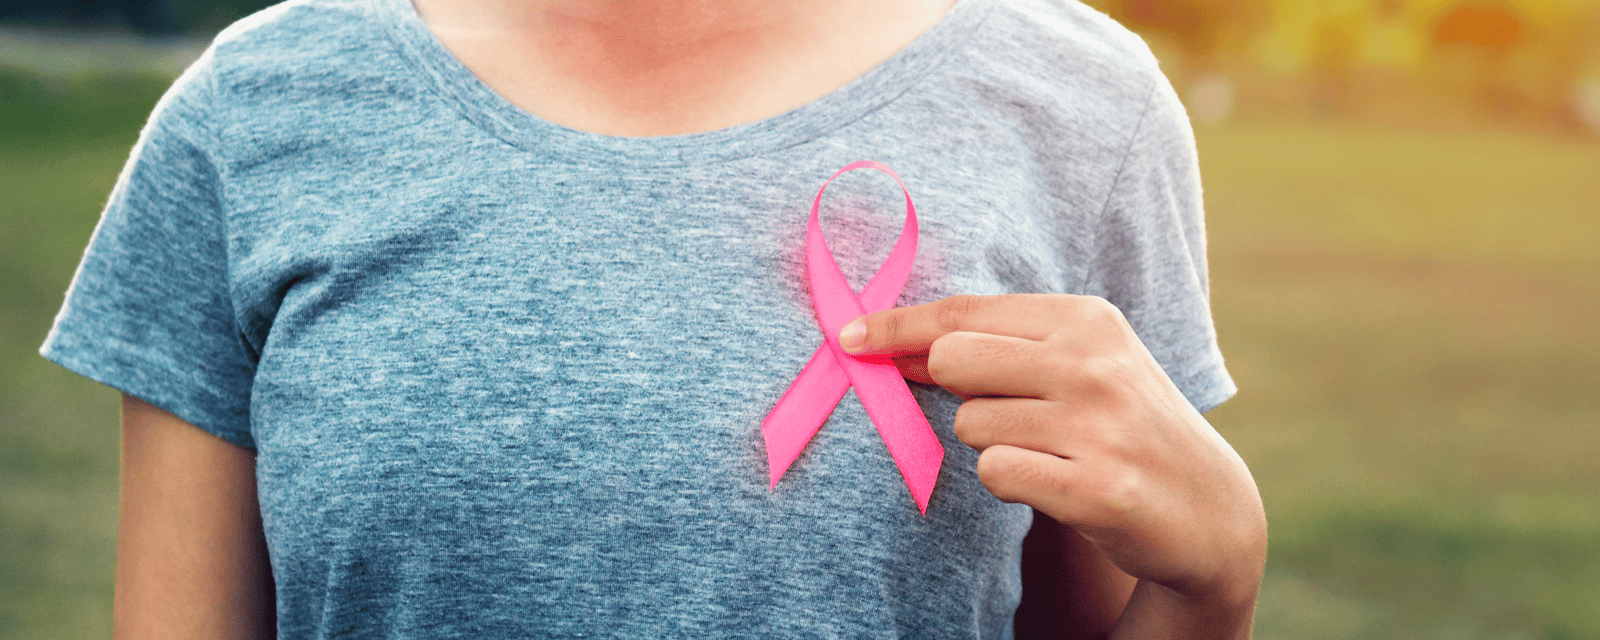 Augmentation très préoccupante des cas de cancer du sein chez les jeunes femmes.